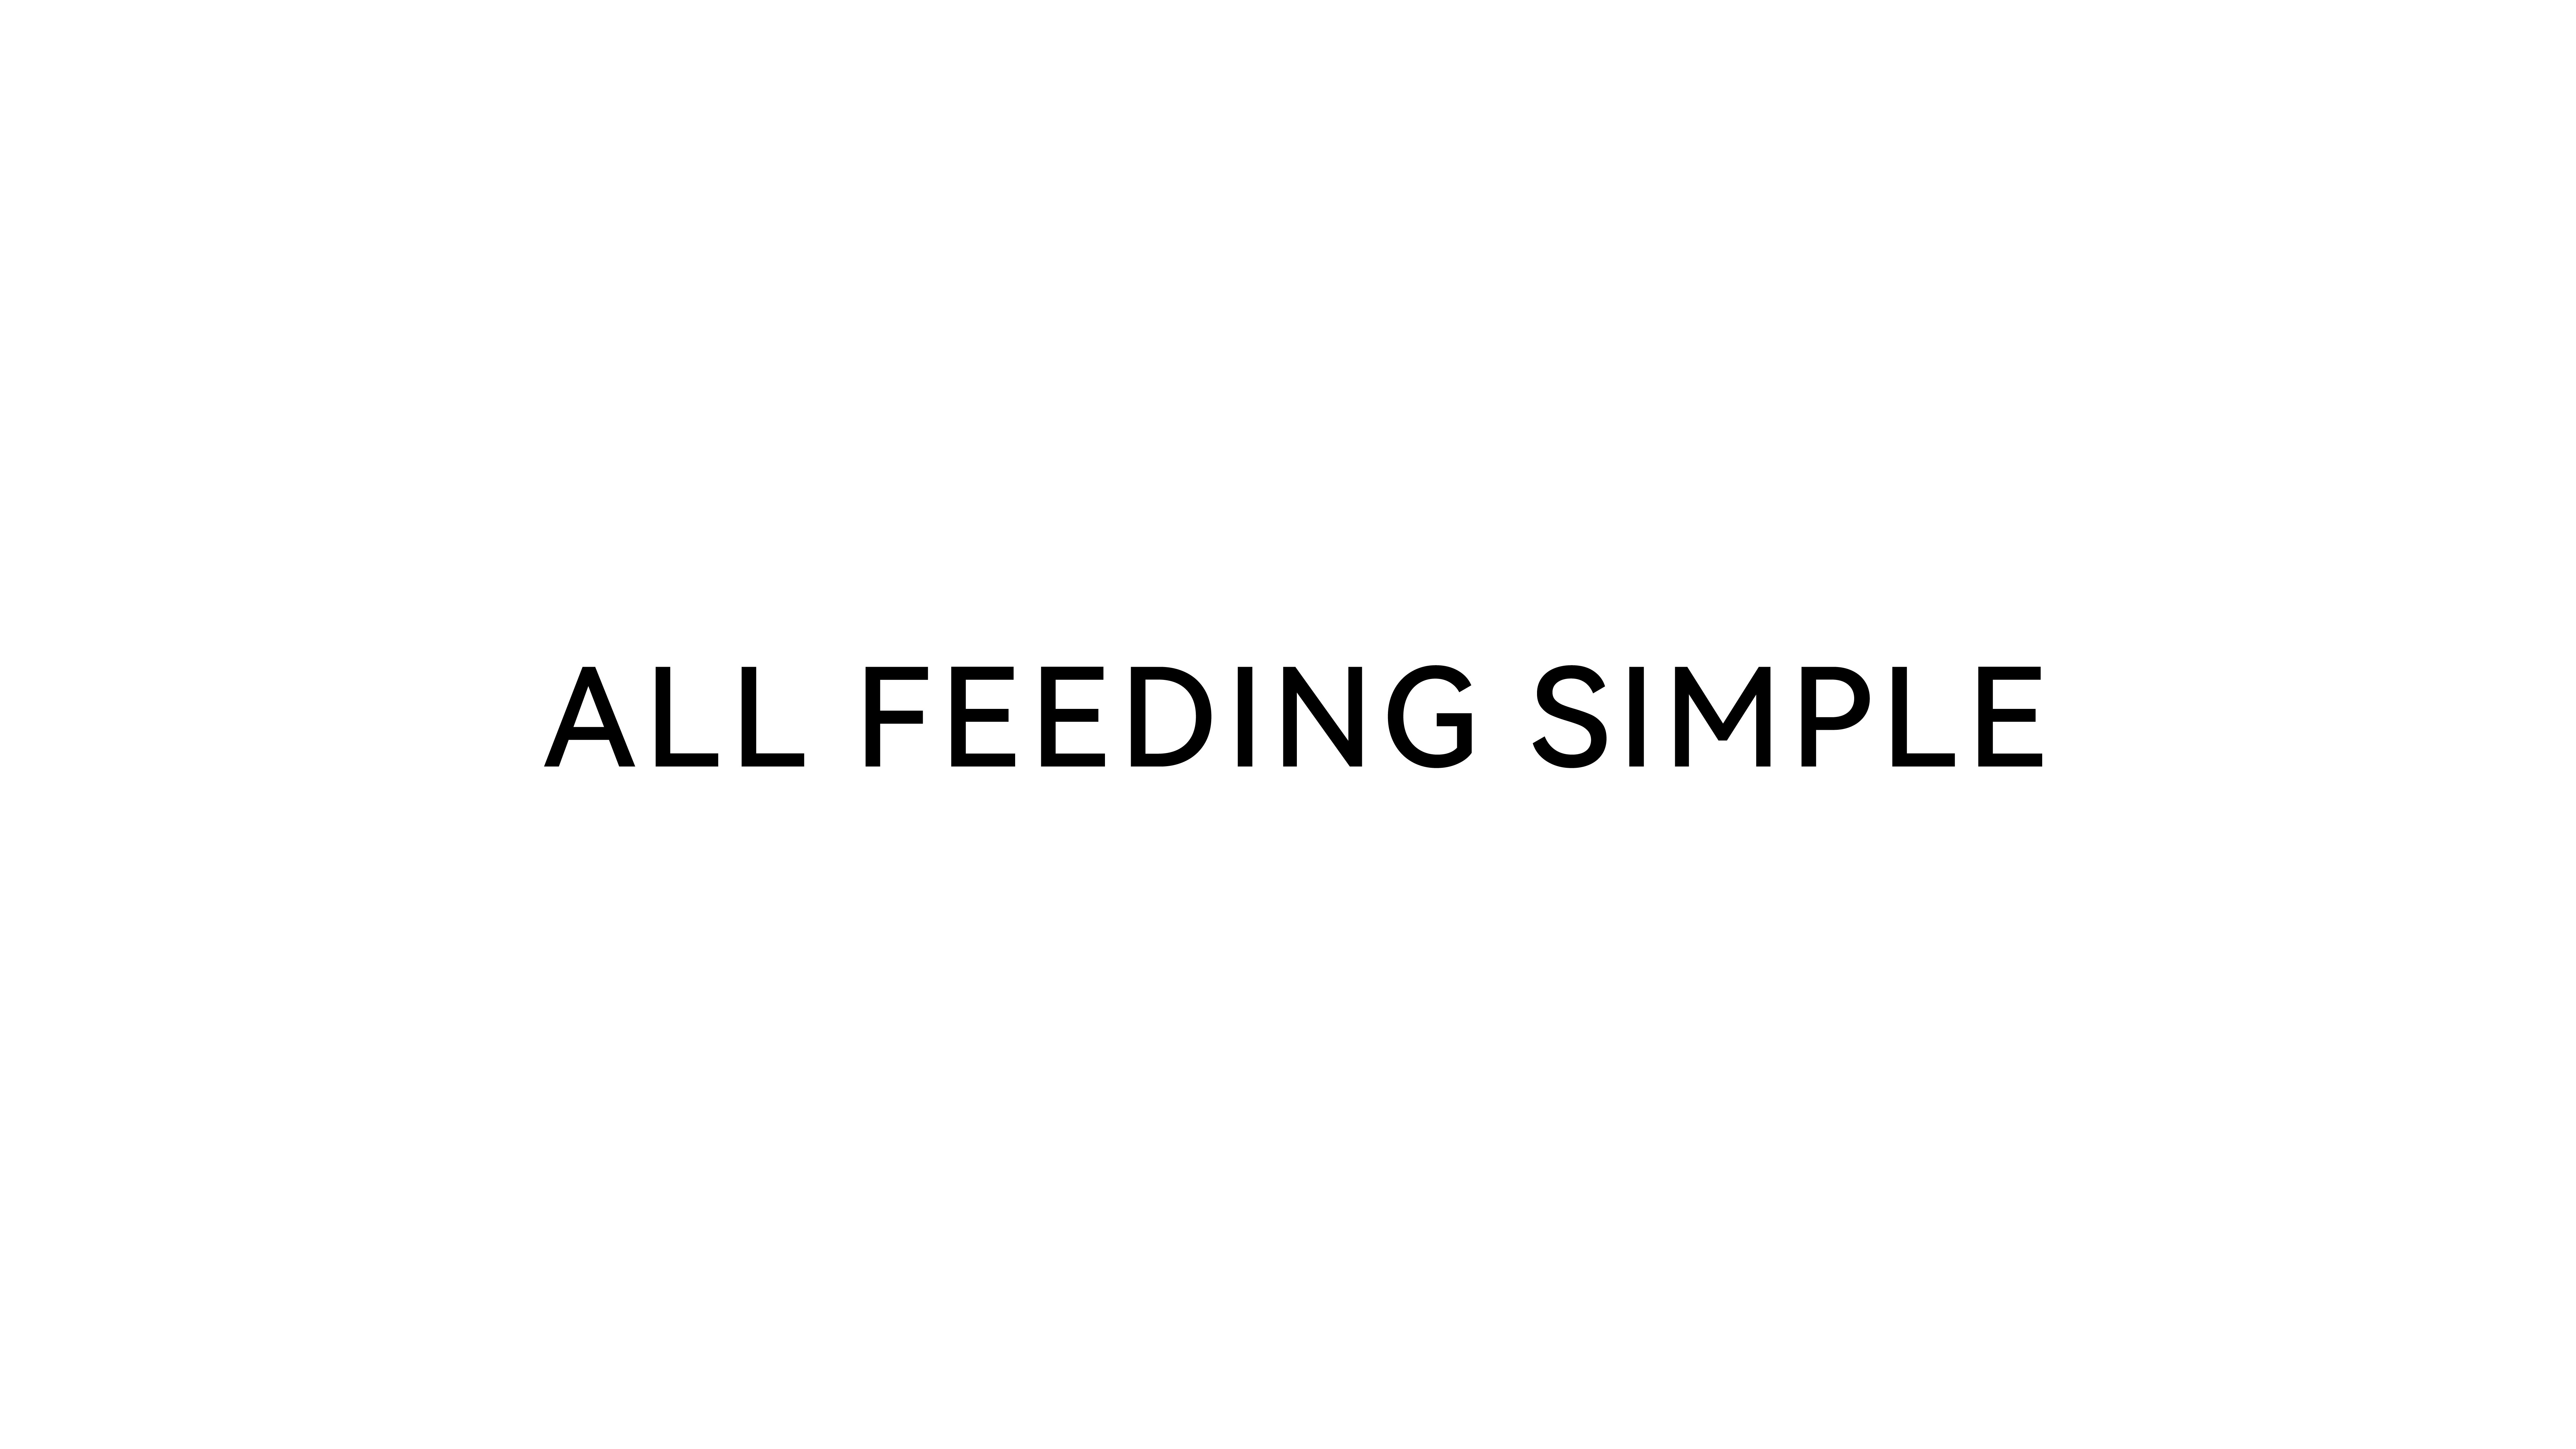  ALL FEEDING SIMPLE